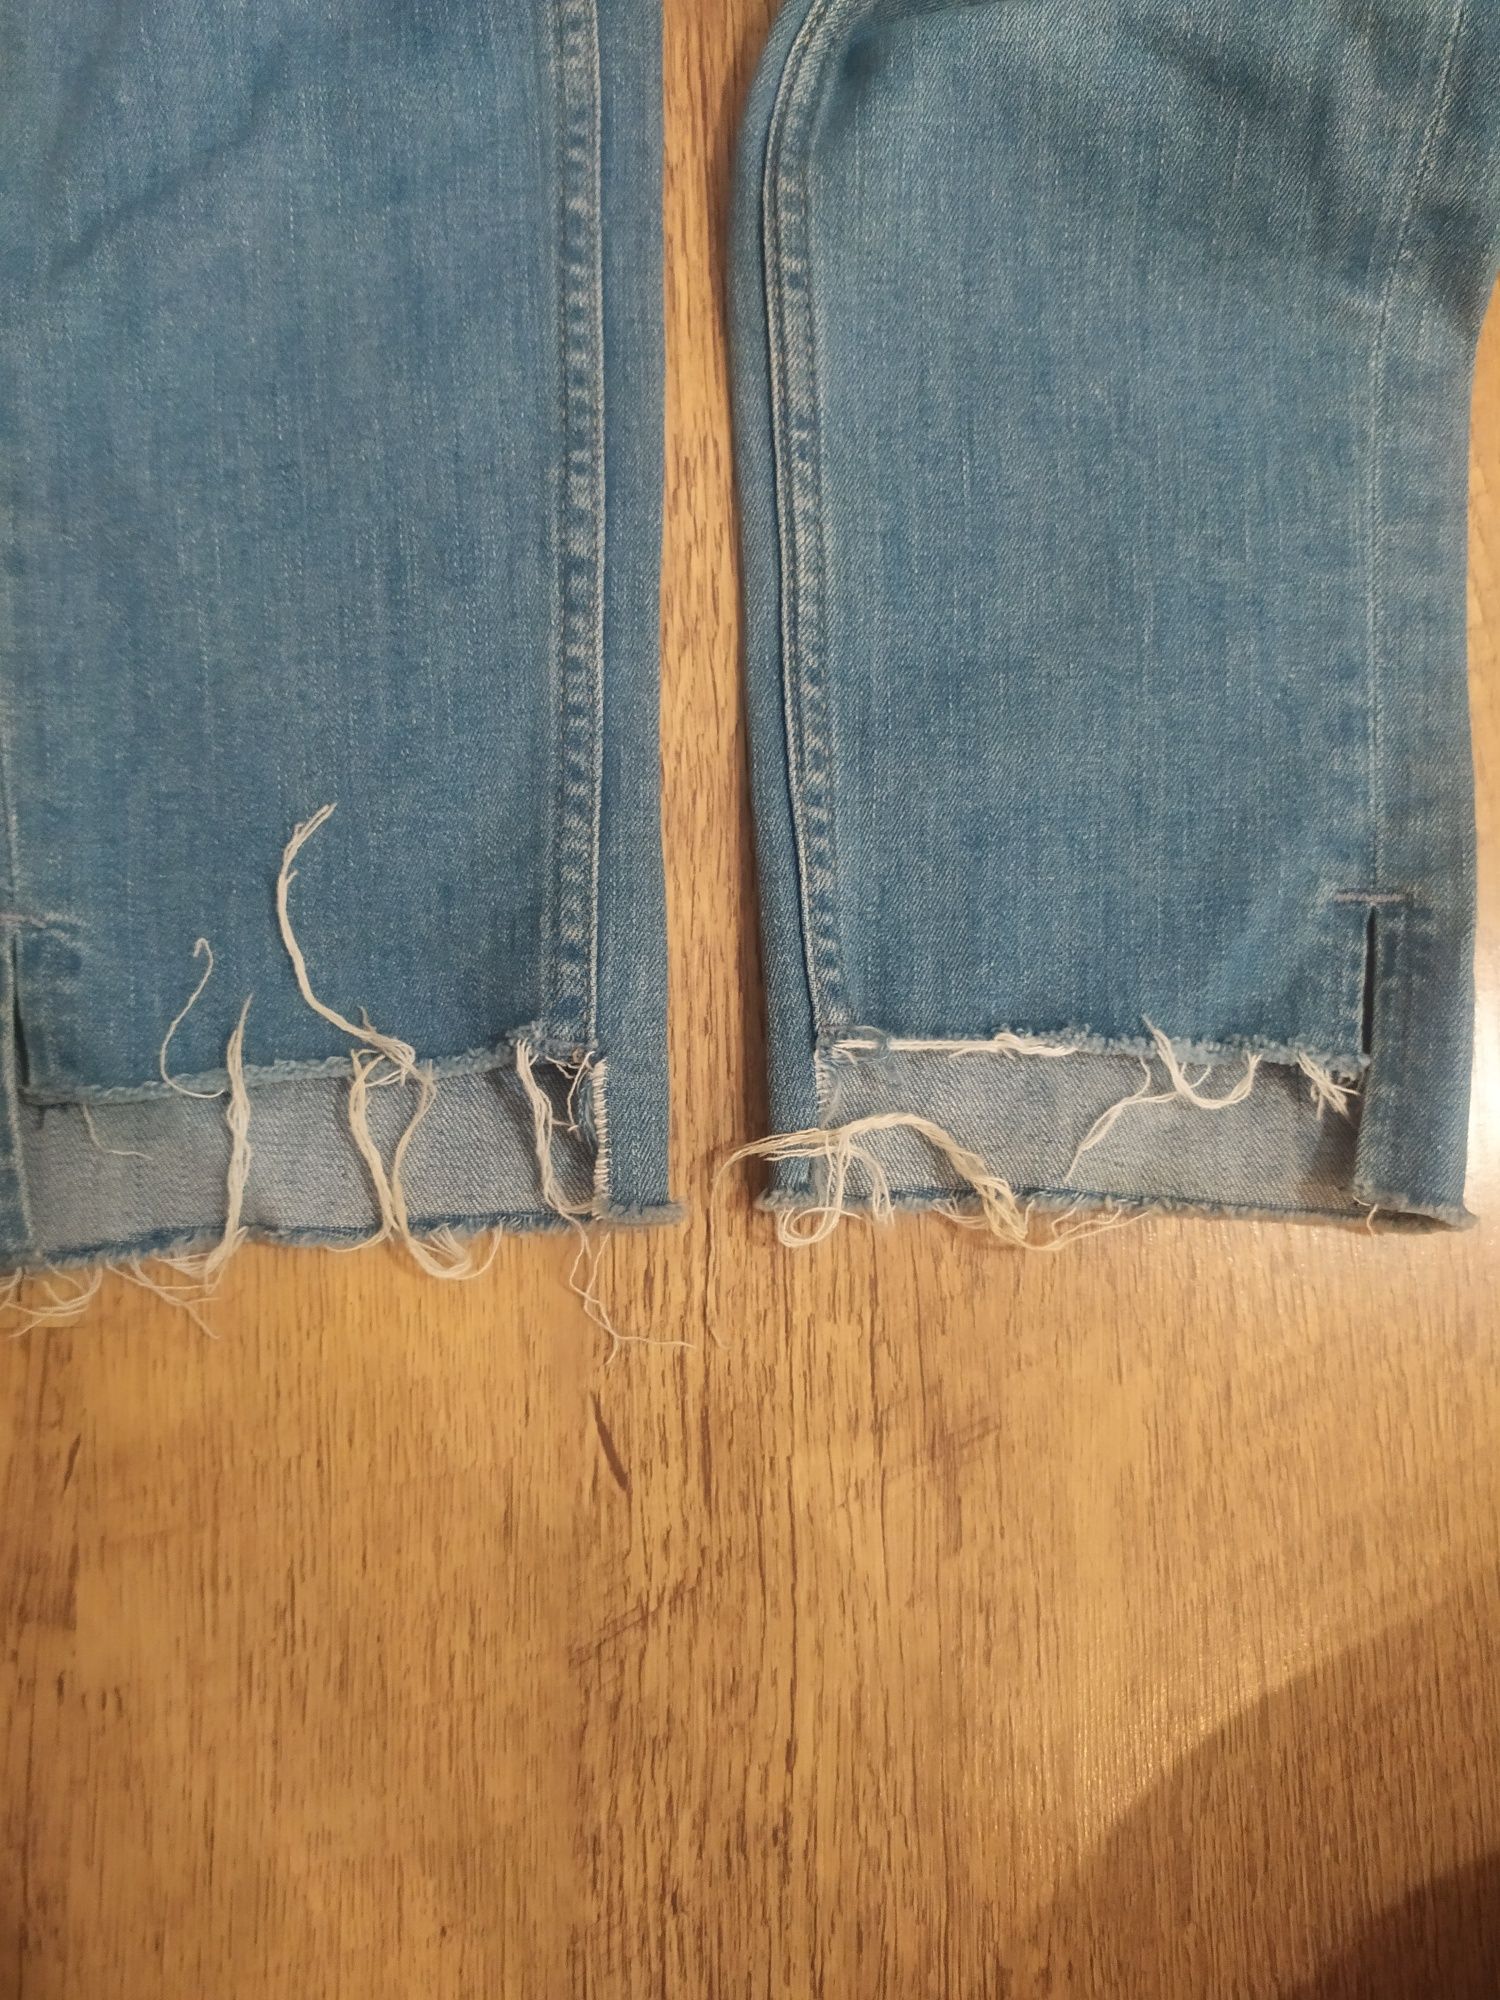 Стильные летние джинсы брюки для беременных